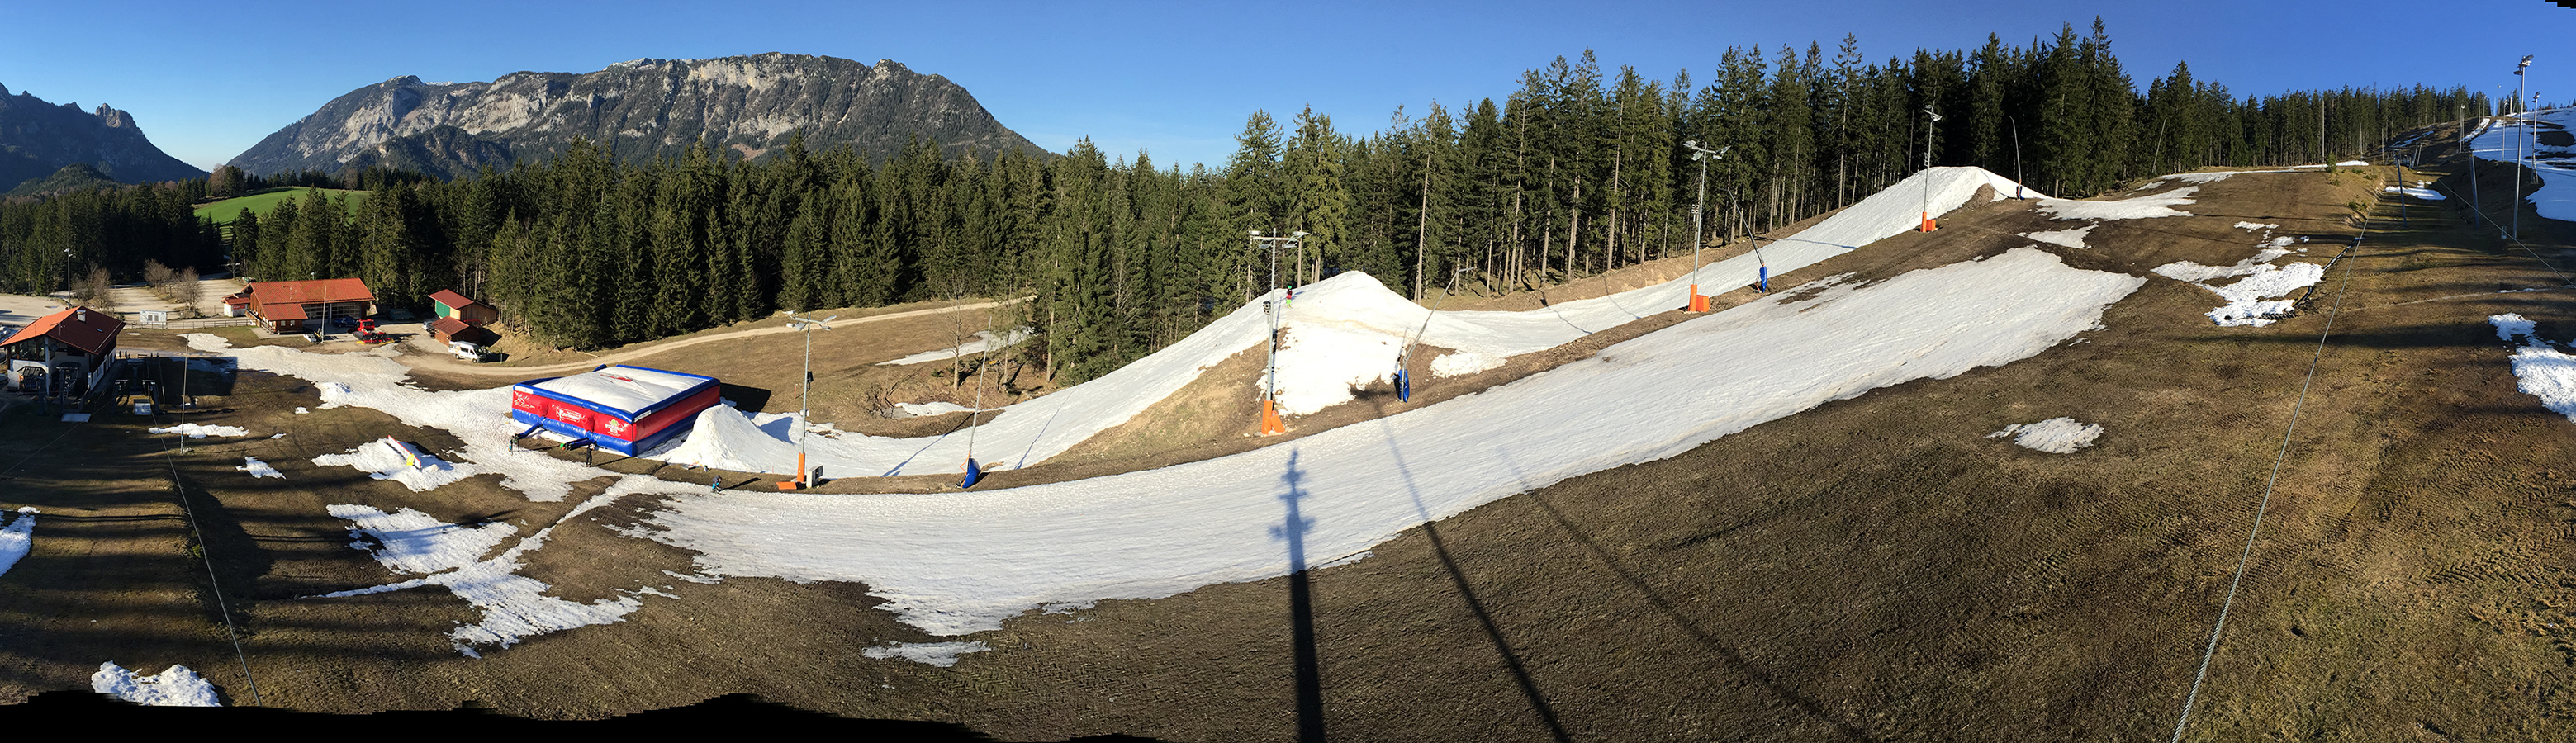 Neuer Snowpark am Götschen in Berchtesgaden